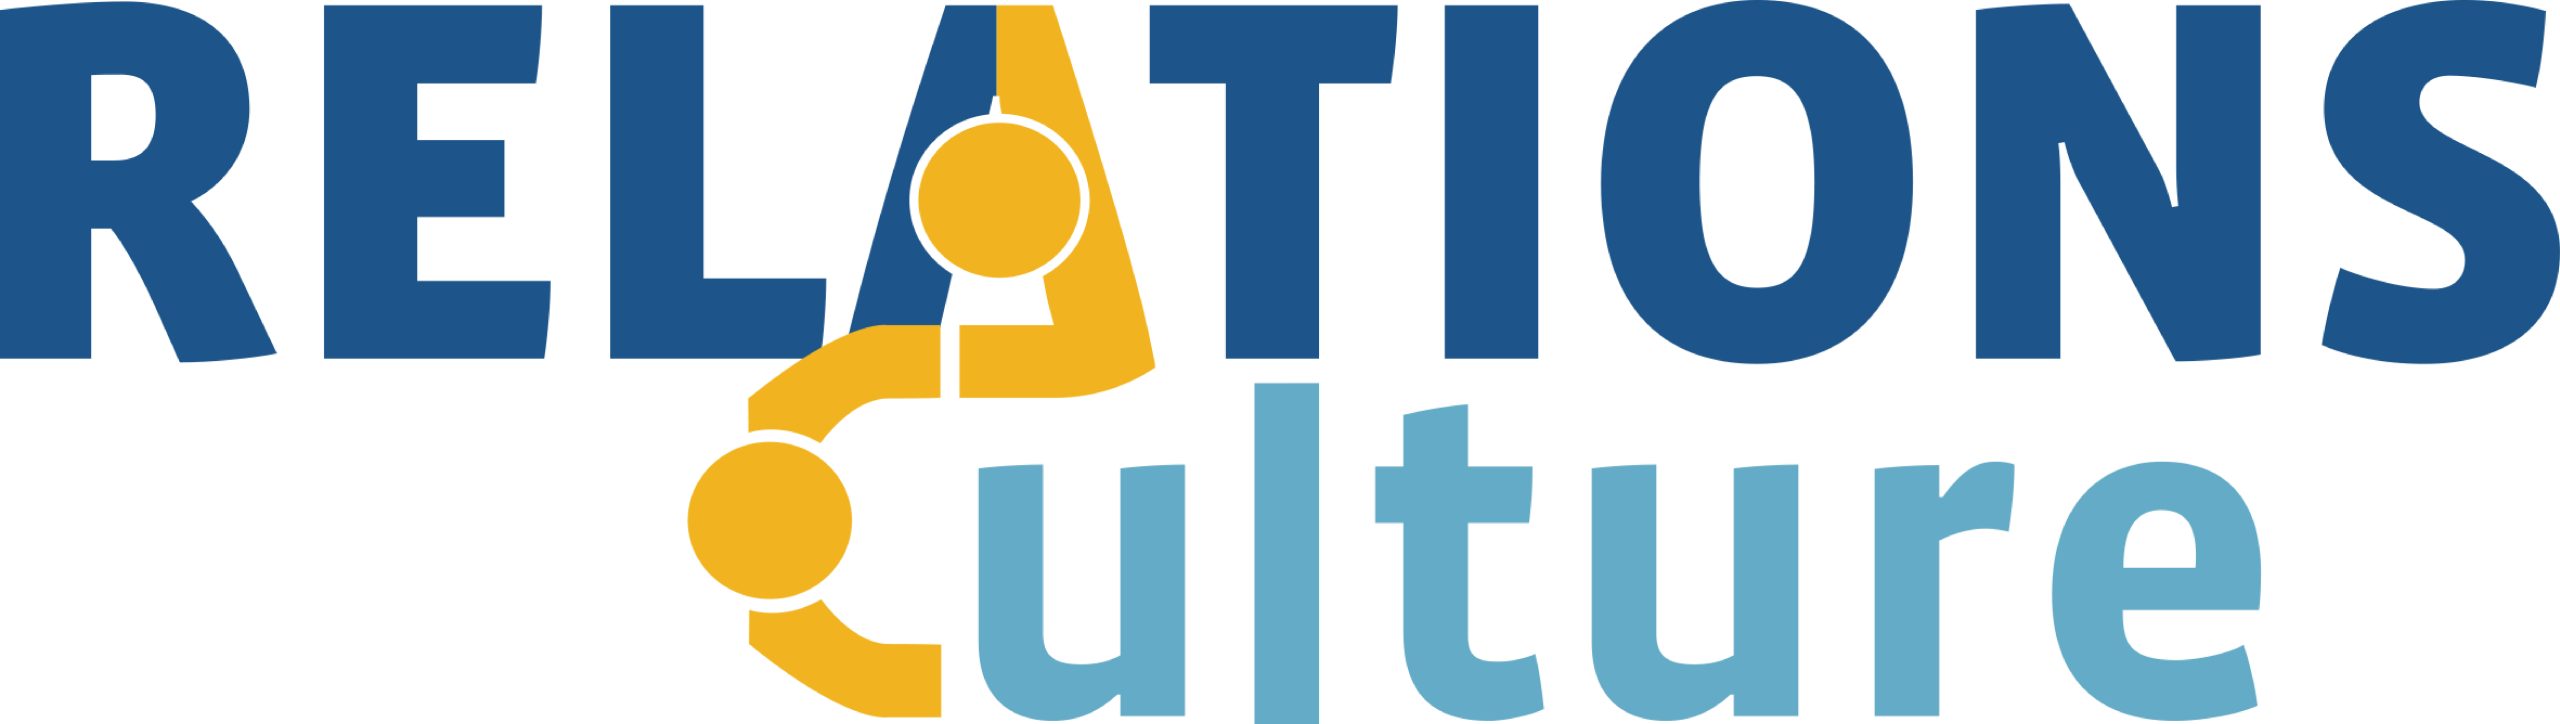 logo relations culture